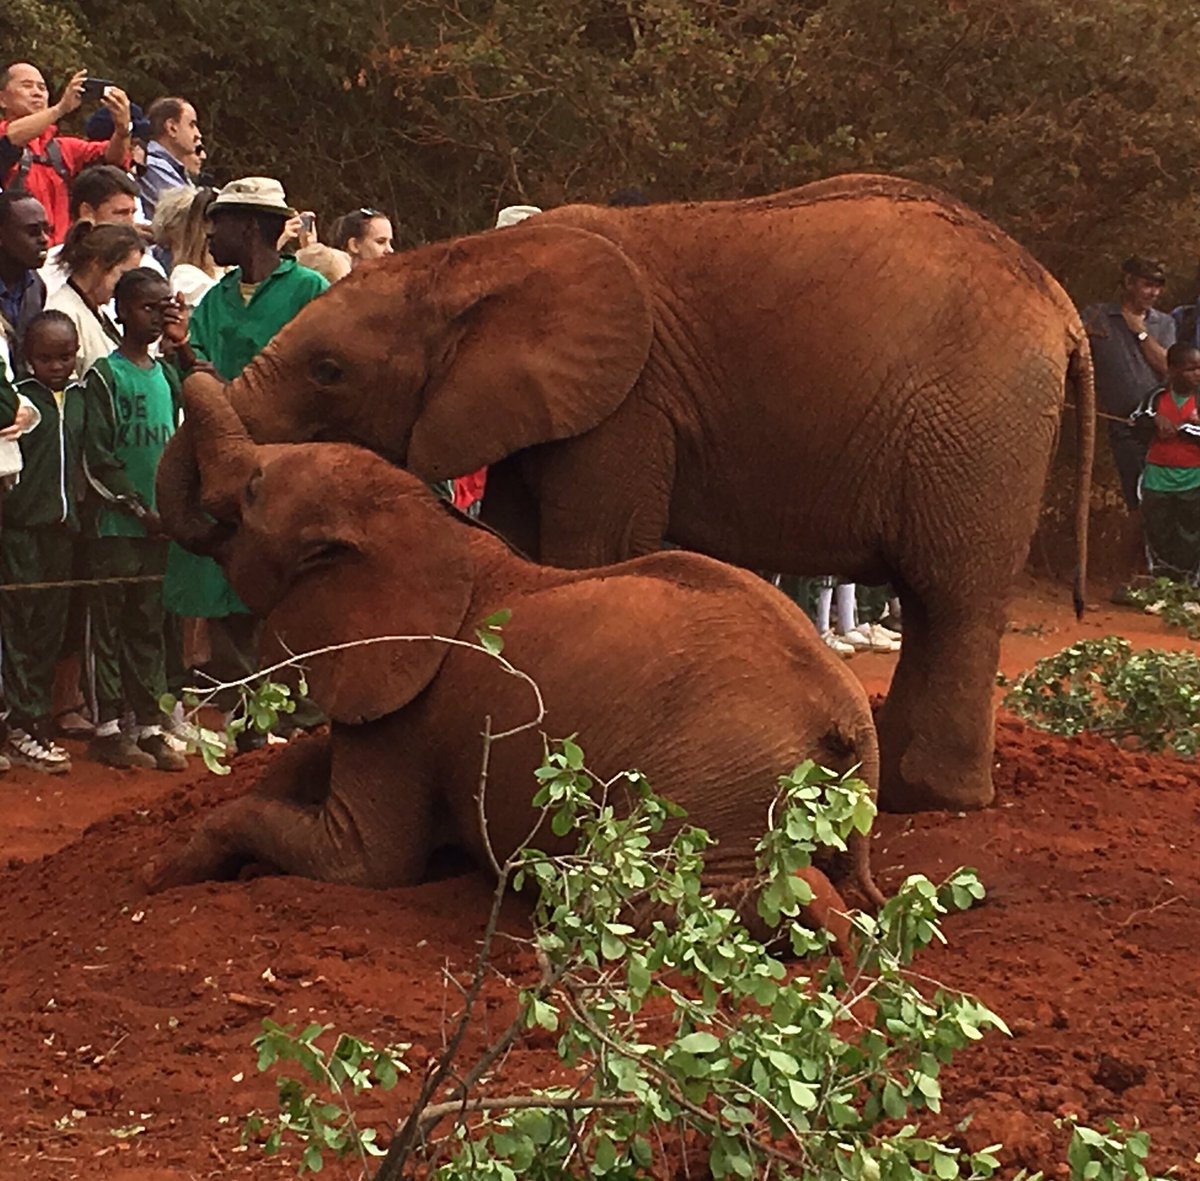 Orphaned Baby Elephants being fed milk at #DavidSheldrickWildlifeTrust...they look so cute!!! #Kenya #Nairobi